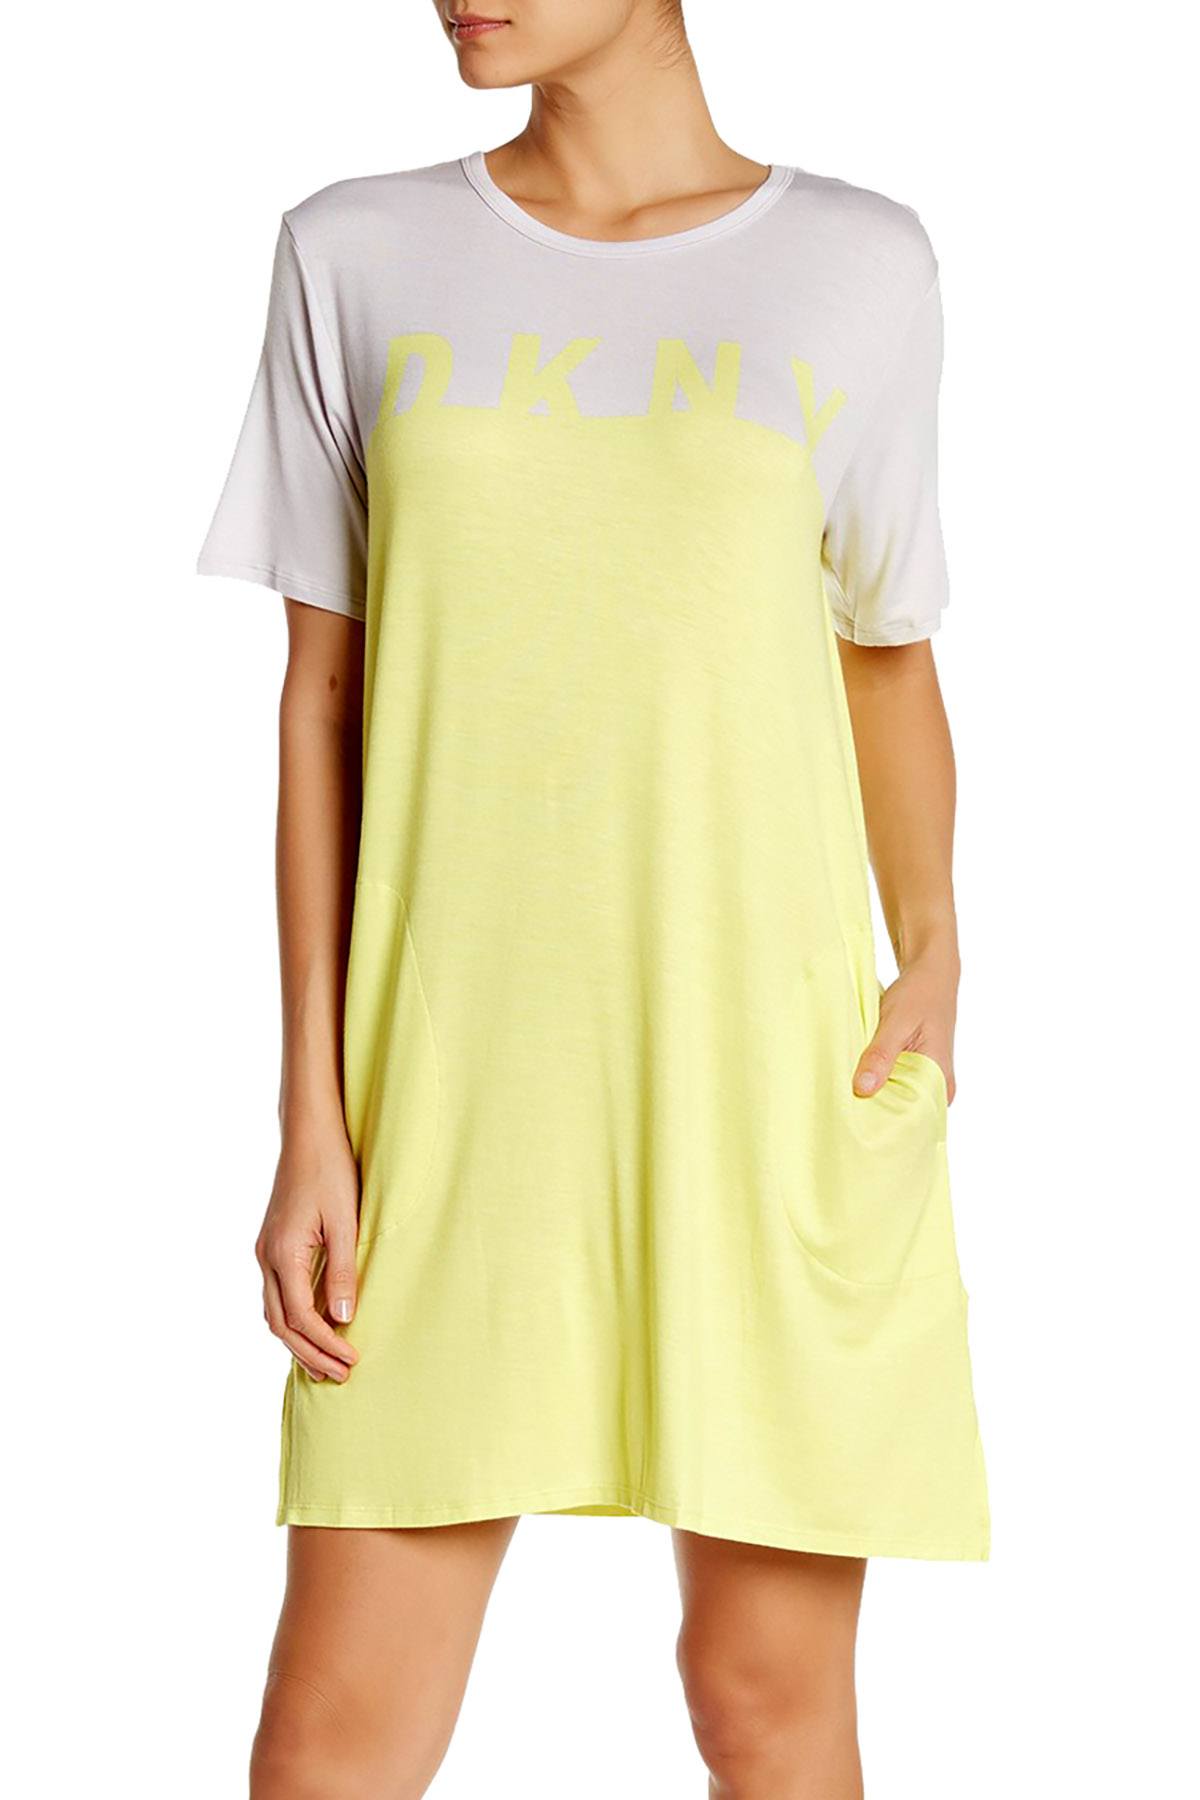 DKNY Yellow/Grey Short Sleeve Logo Colorblock Knit Sleepshirt